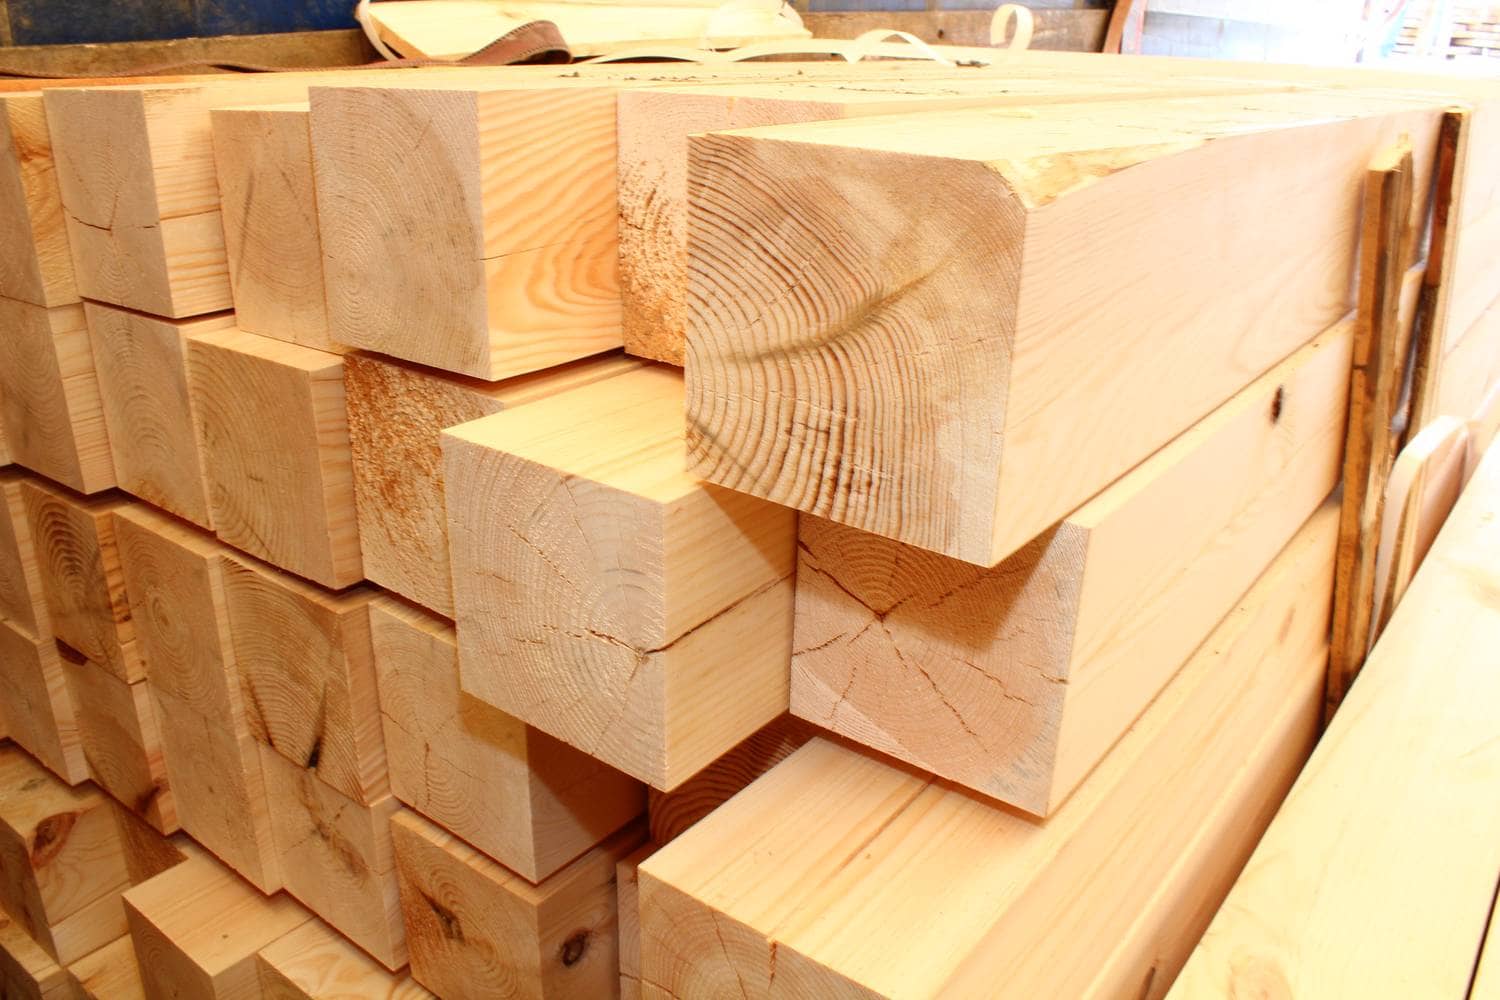 Статьи по строительству загородных деревянных домов - строительная компания «Рифт Дом»